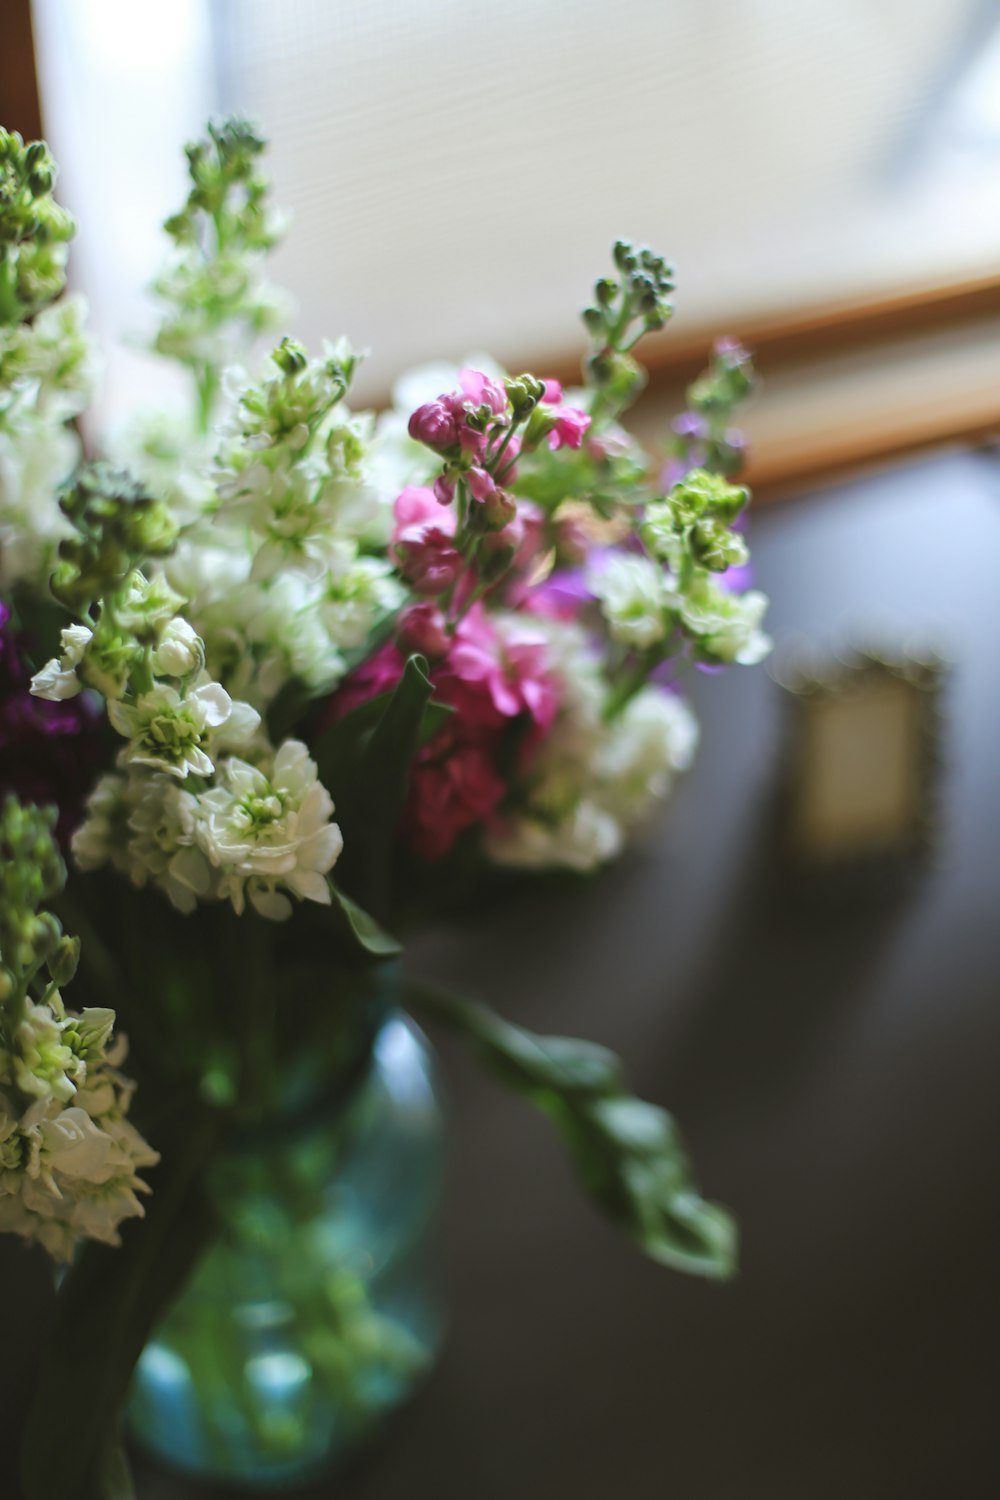 un vaso pieno di fiori seduto sopra un tavolo